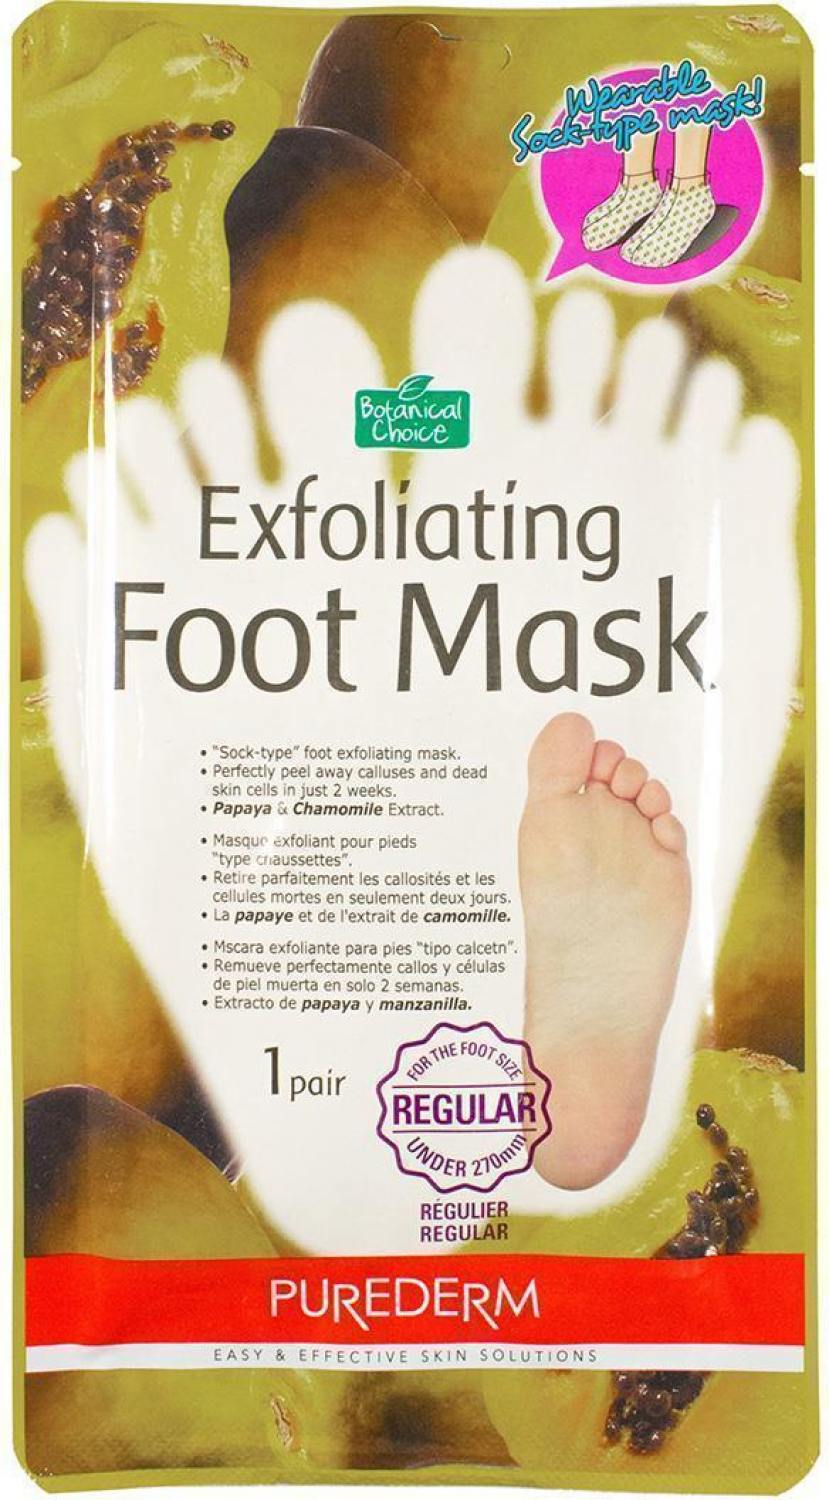 Педикюрные носочки (Маска отшелушивающая для ног) Purederm Exfoliating Foot Mask. Артикул 081300000